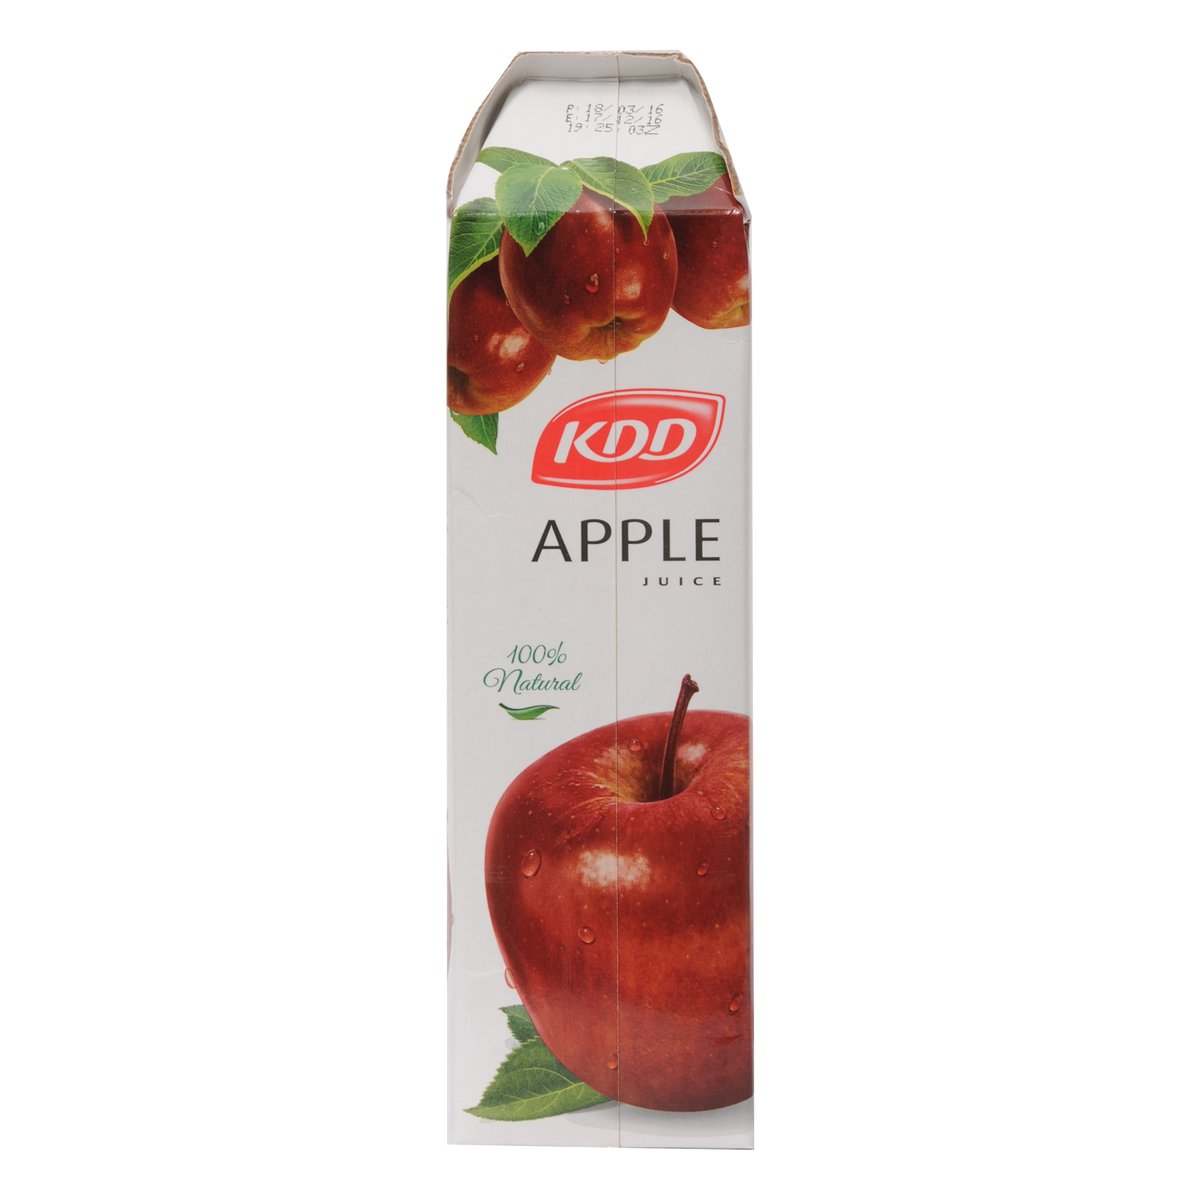 KDD Apple Juice 1Litre x 4 Pieces